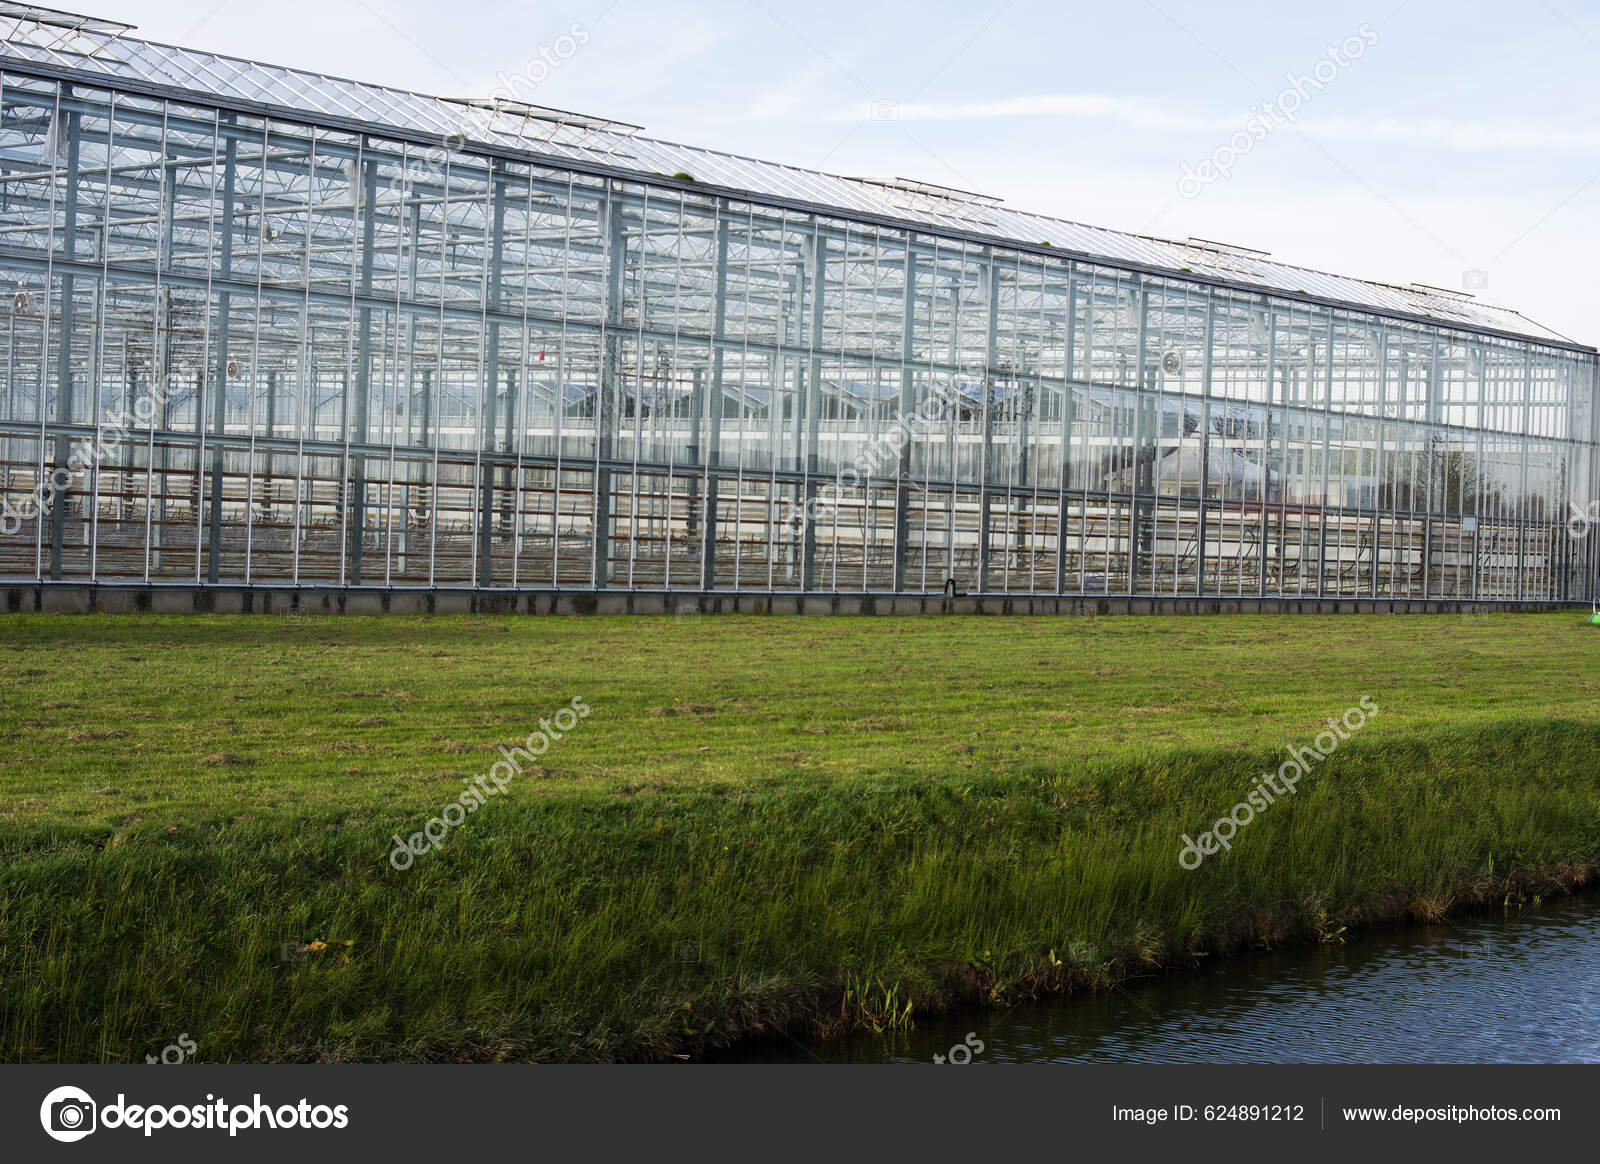 Invernadero Industrial Exterior De Los Países Bajos Imagen de archivo -  Imagen de crecimiento, europa: 265743045